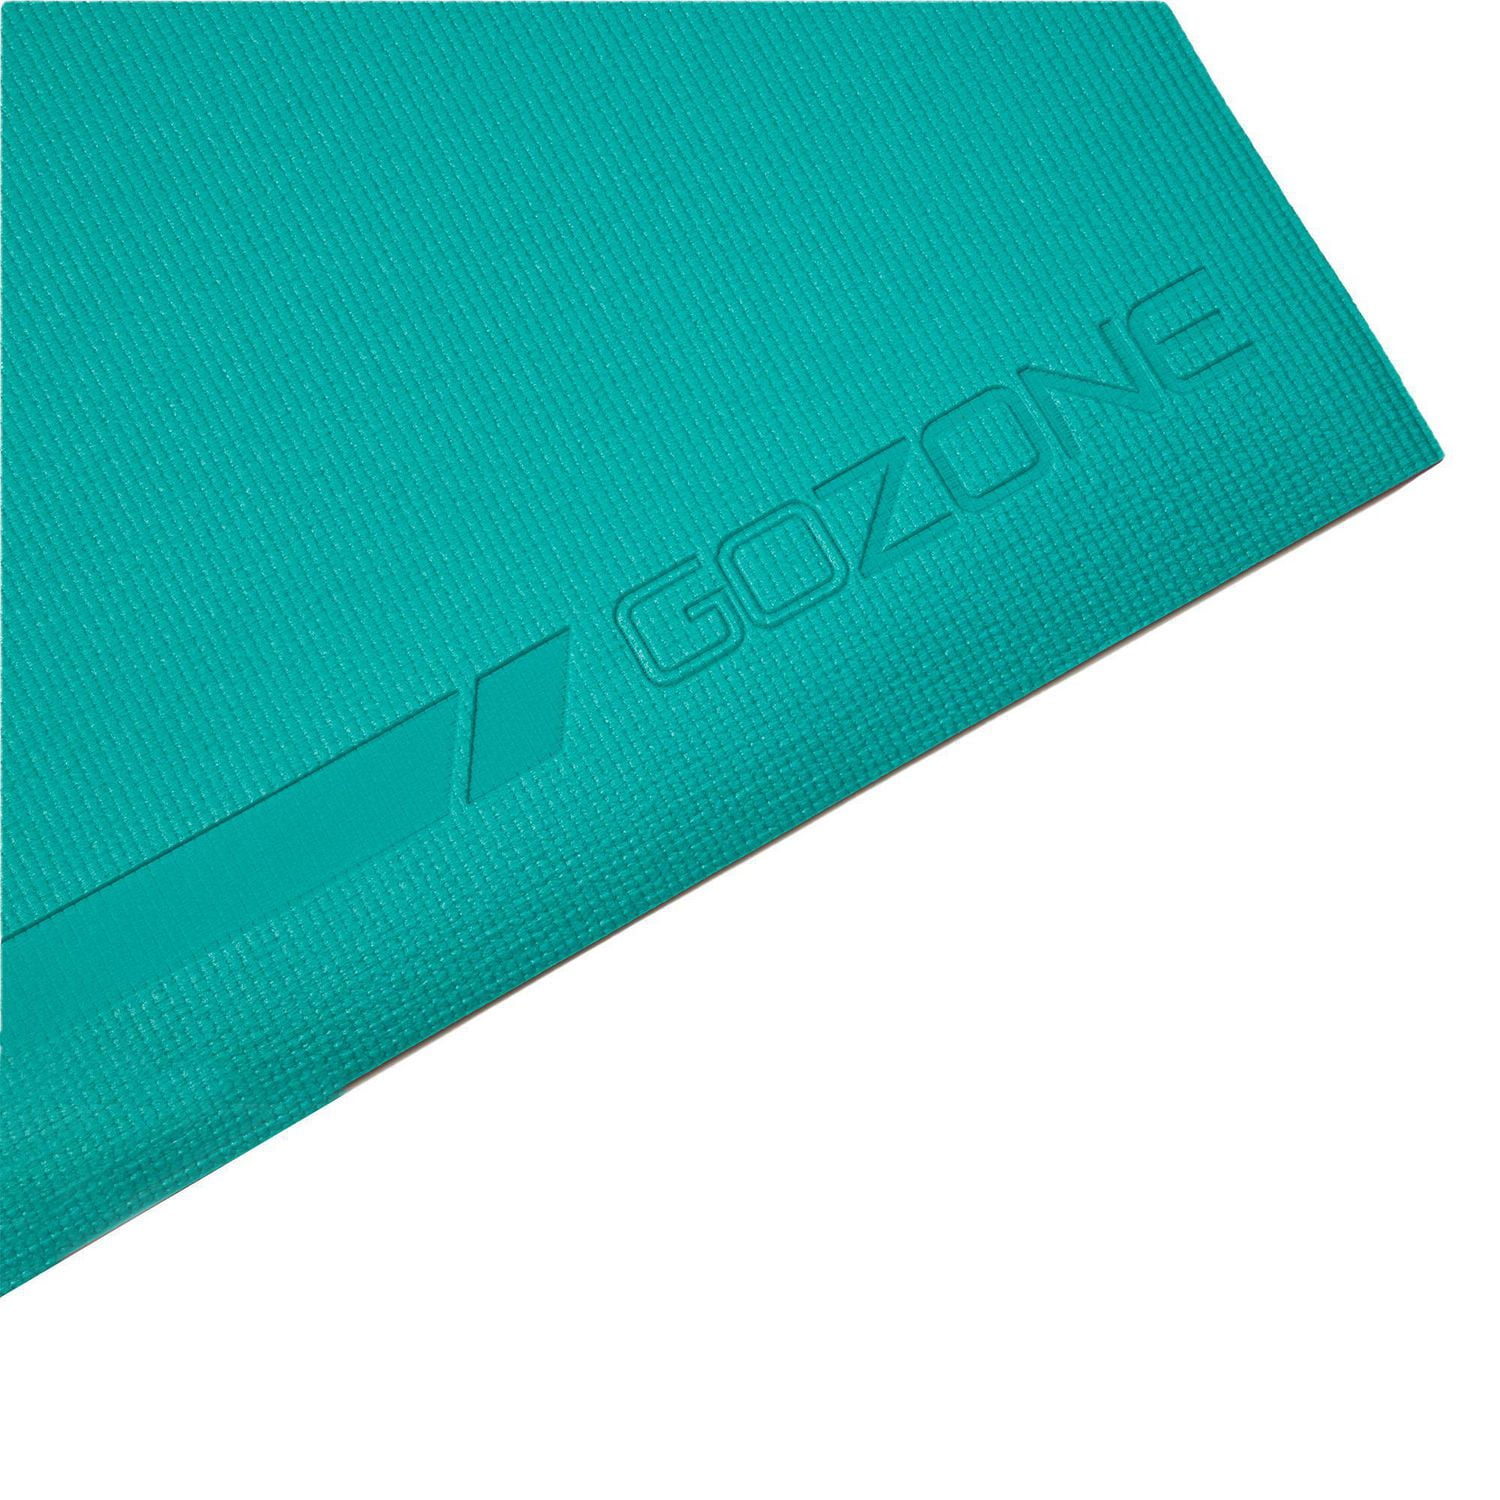 GoZone 5mm Reversible PVC Yoga Mat, Multi Combo 